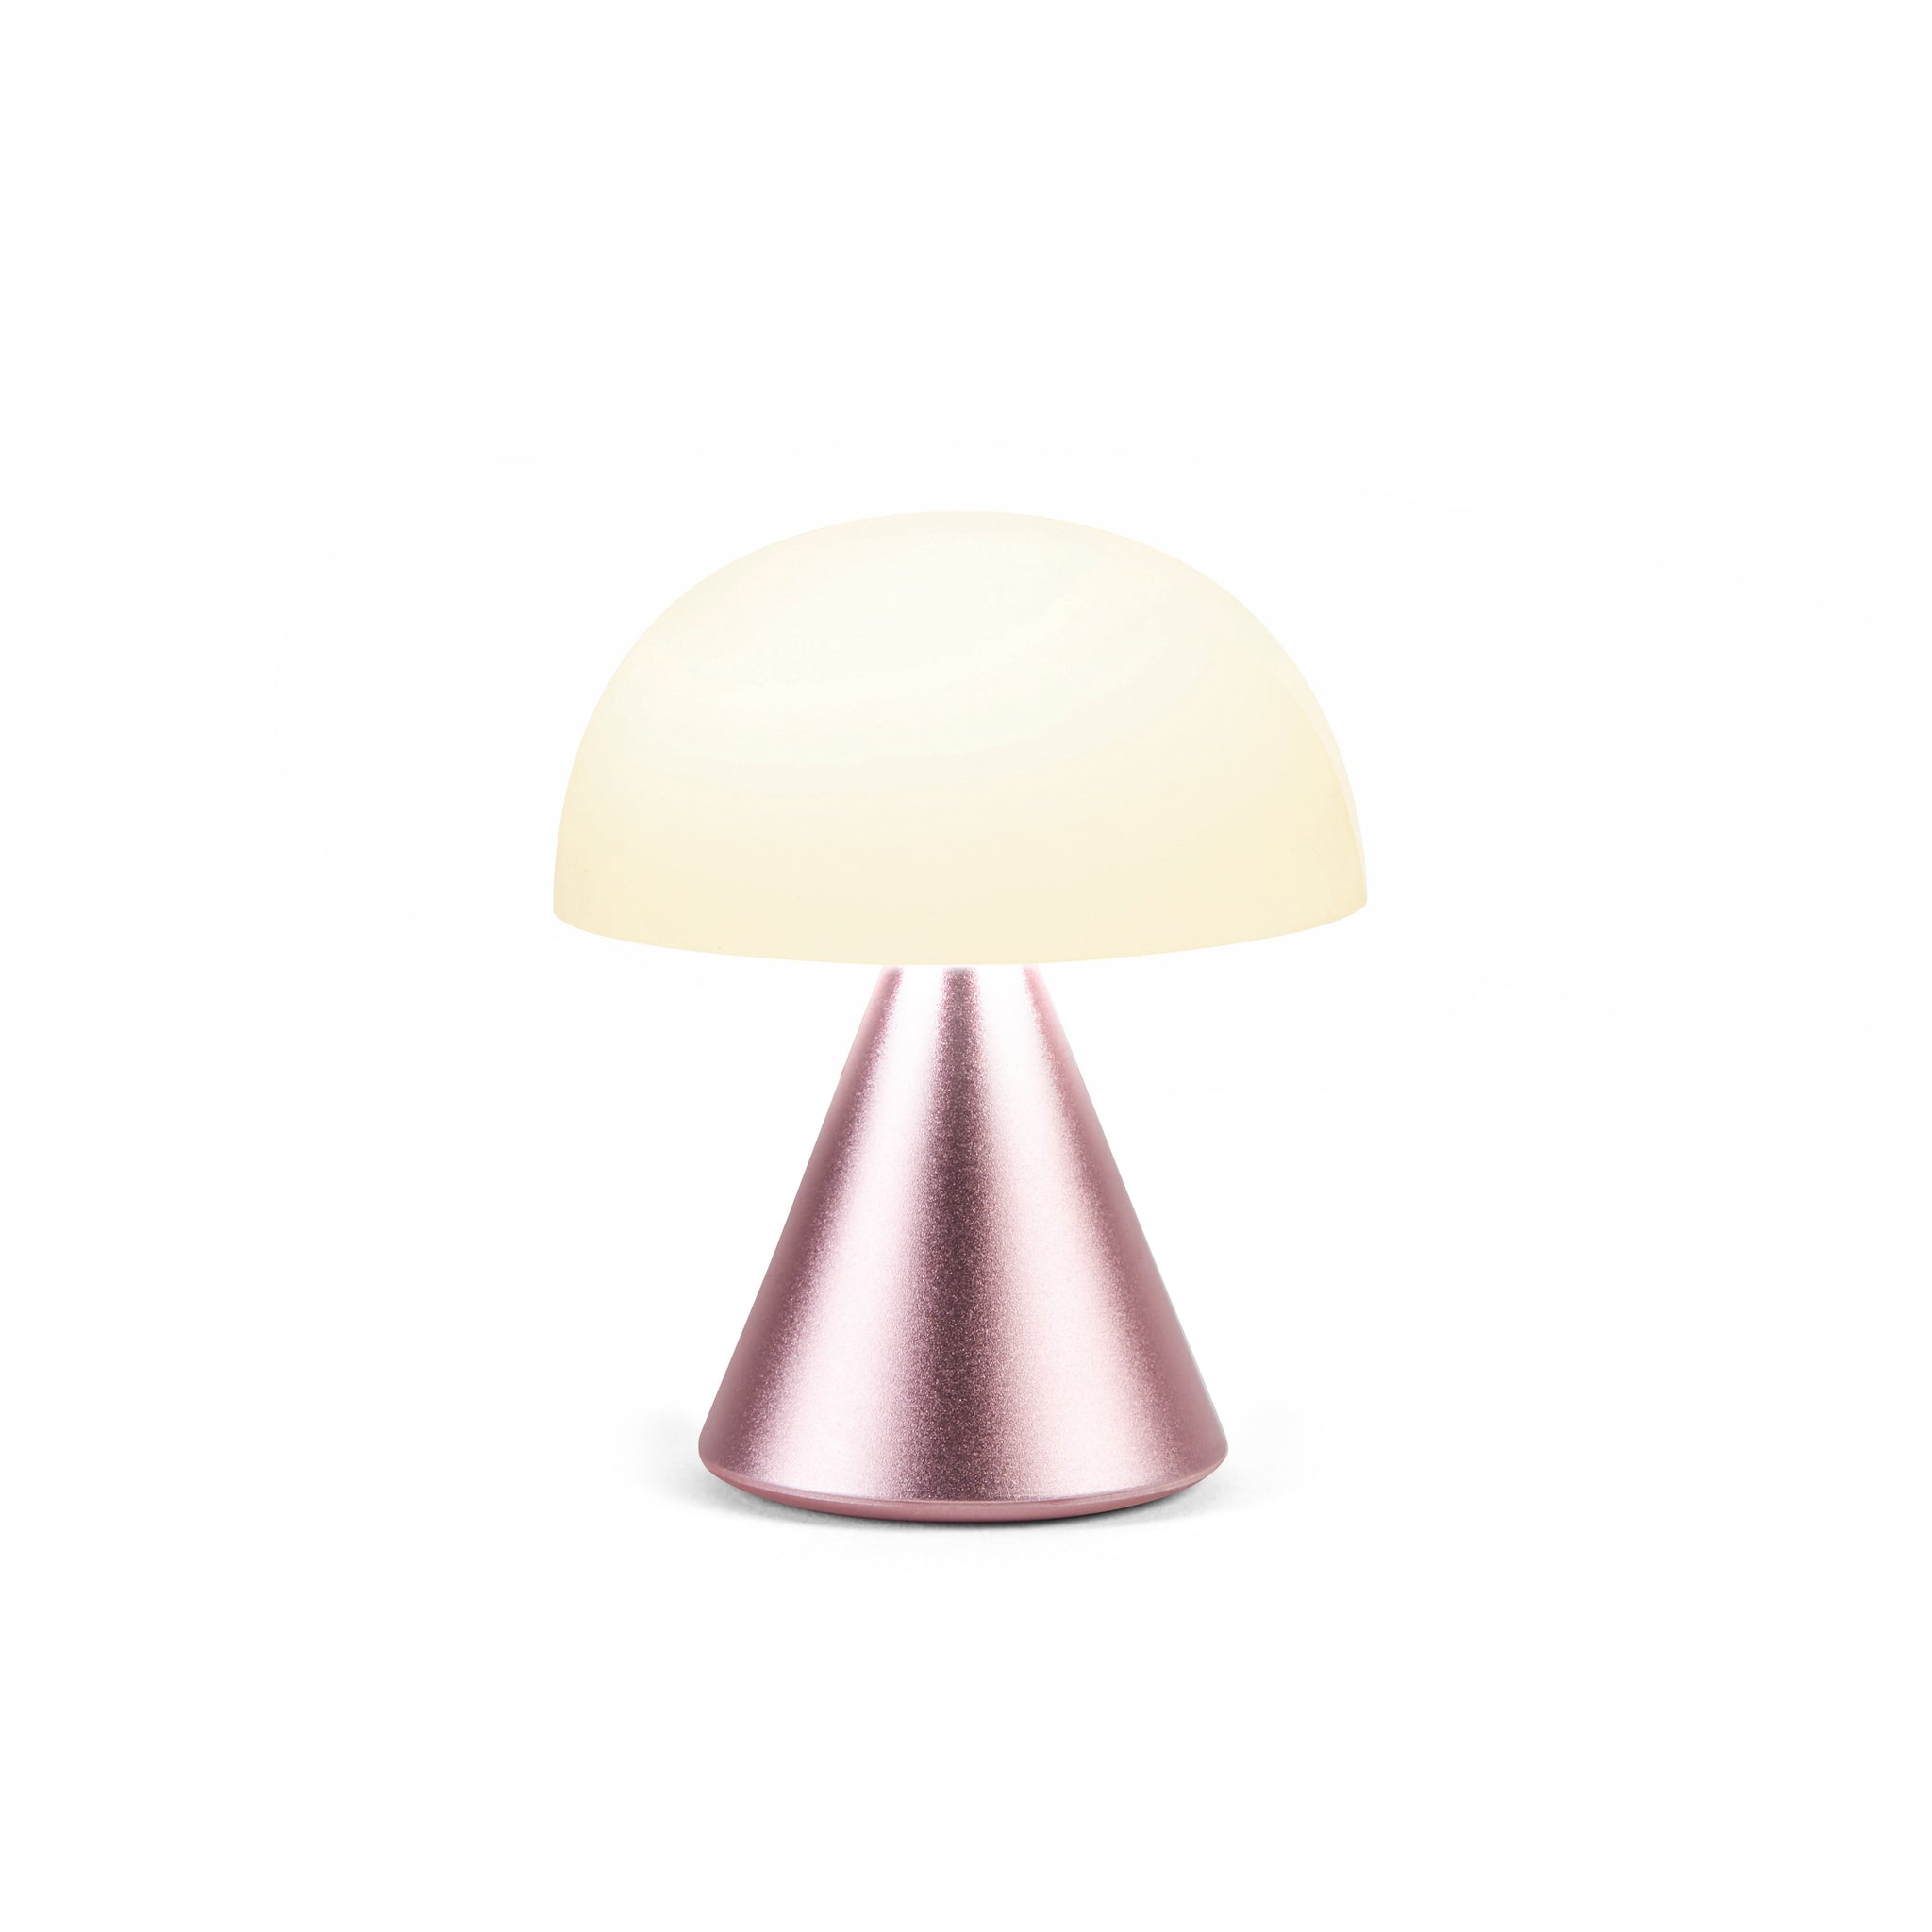 Lexon Mina Small Roze│Oplaadbare LED lamp│art. LH60MLP│vooraanzijde met warm licht aan